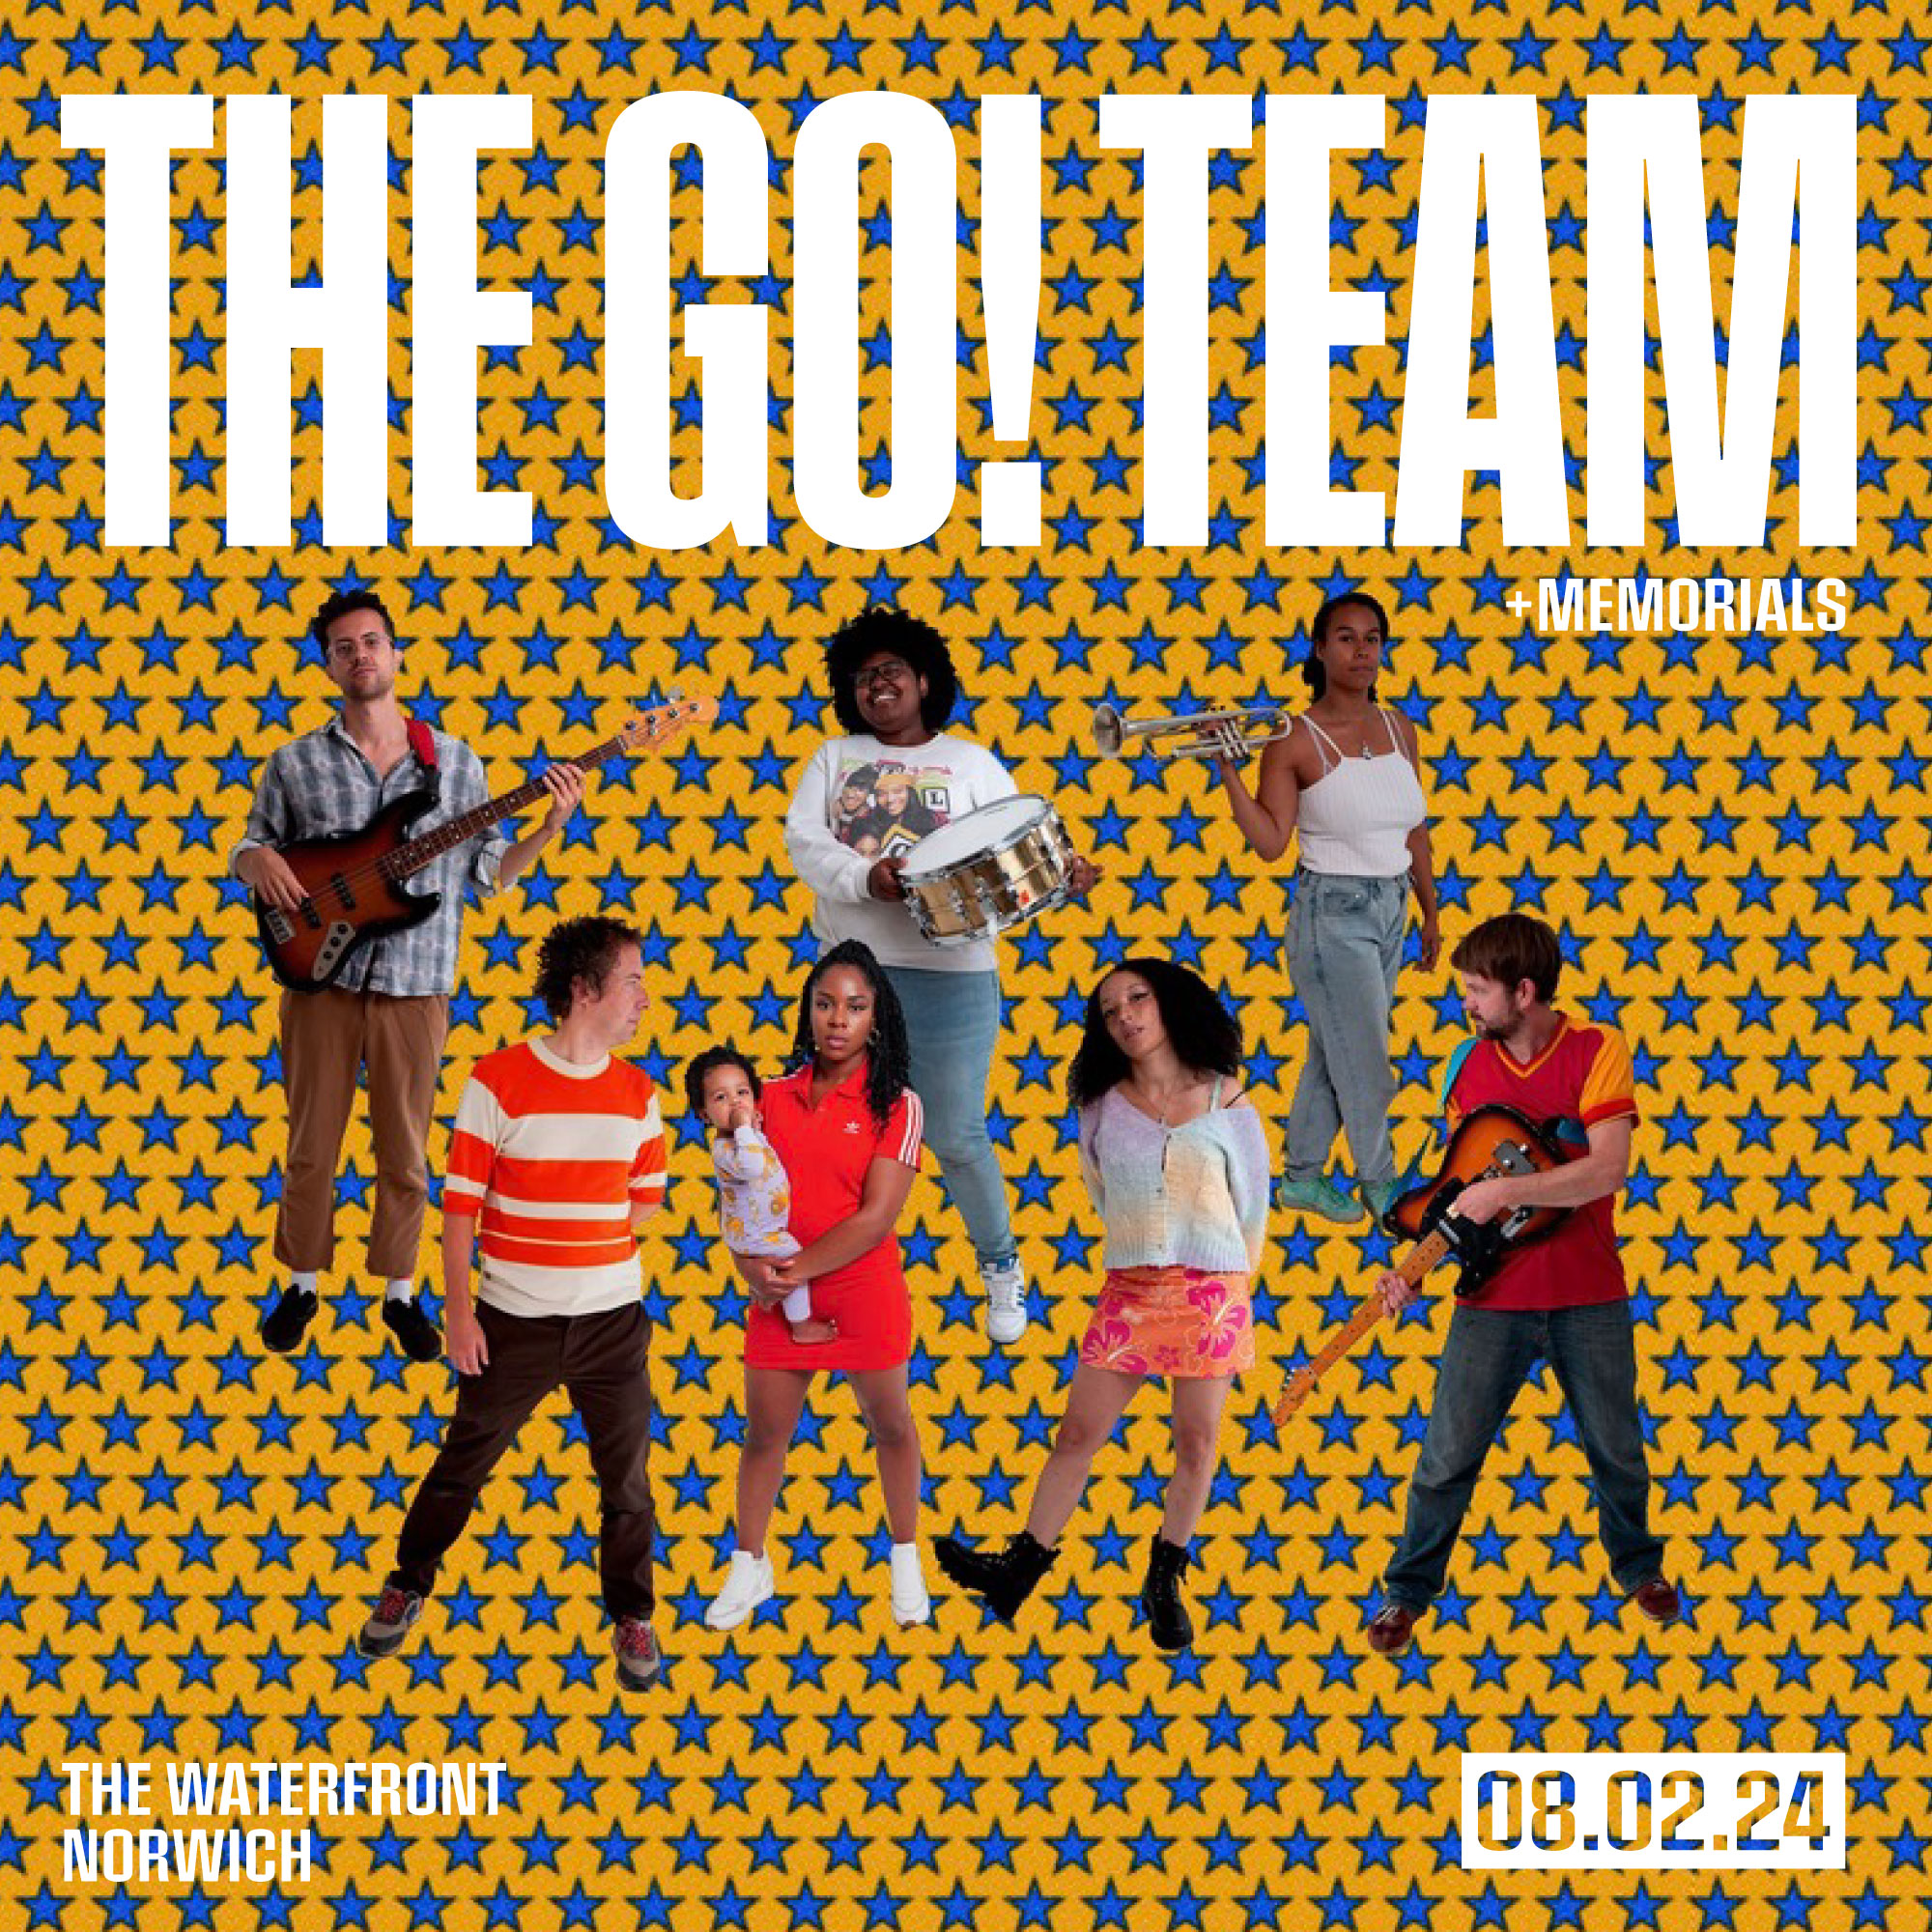 The Go! Team